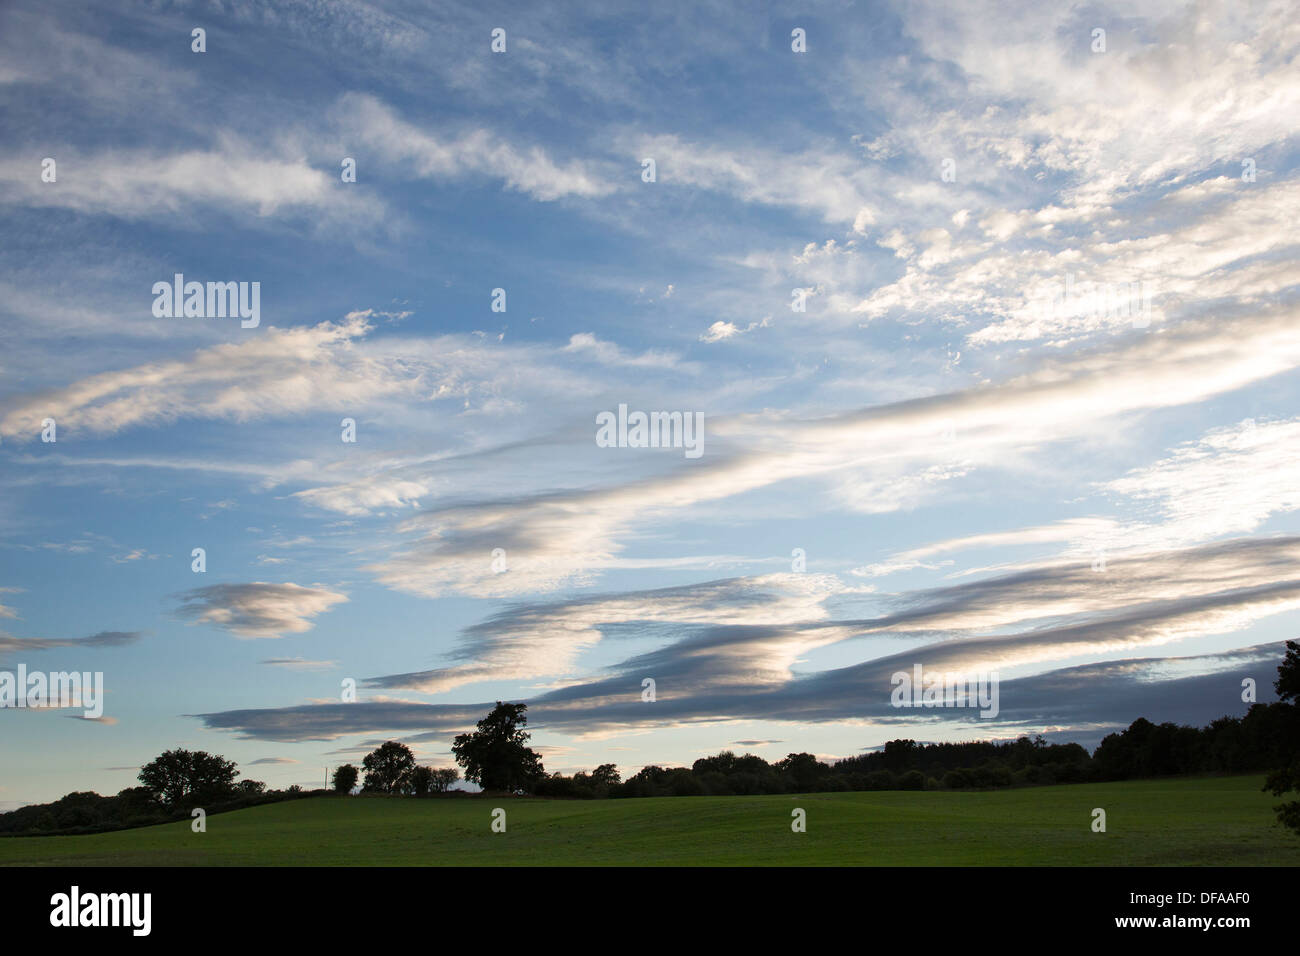 Linsenförmige Wolken bilden über eine Landschaft in England, UK. Stockfoto